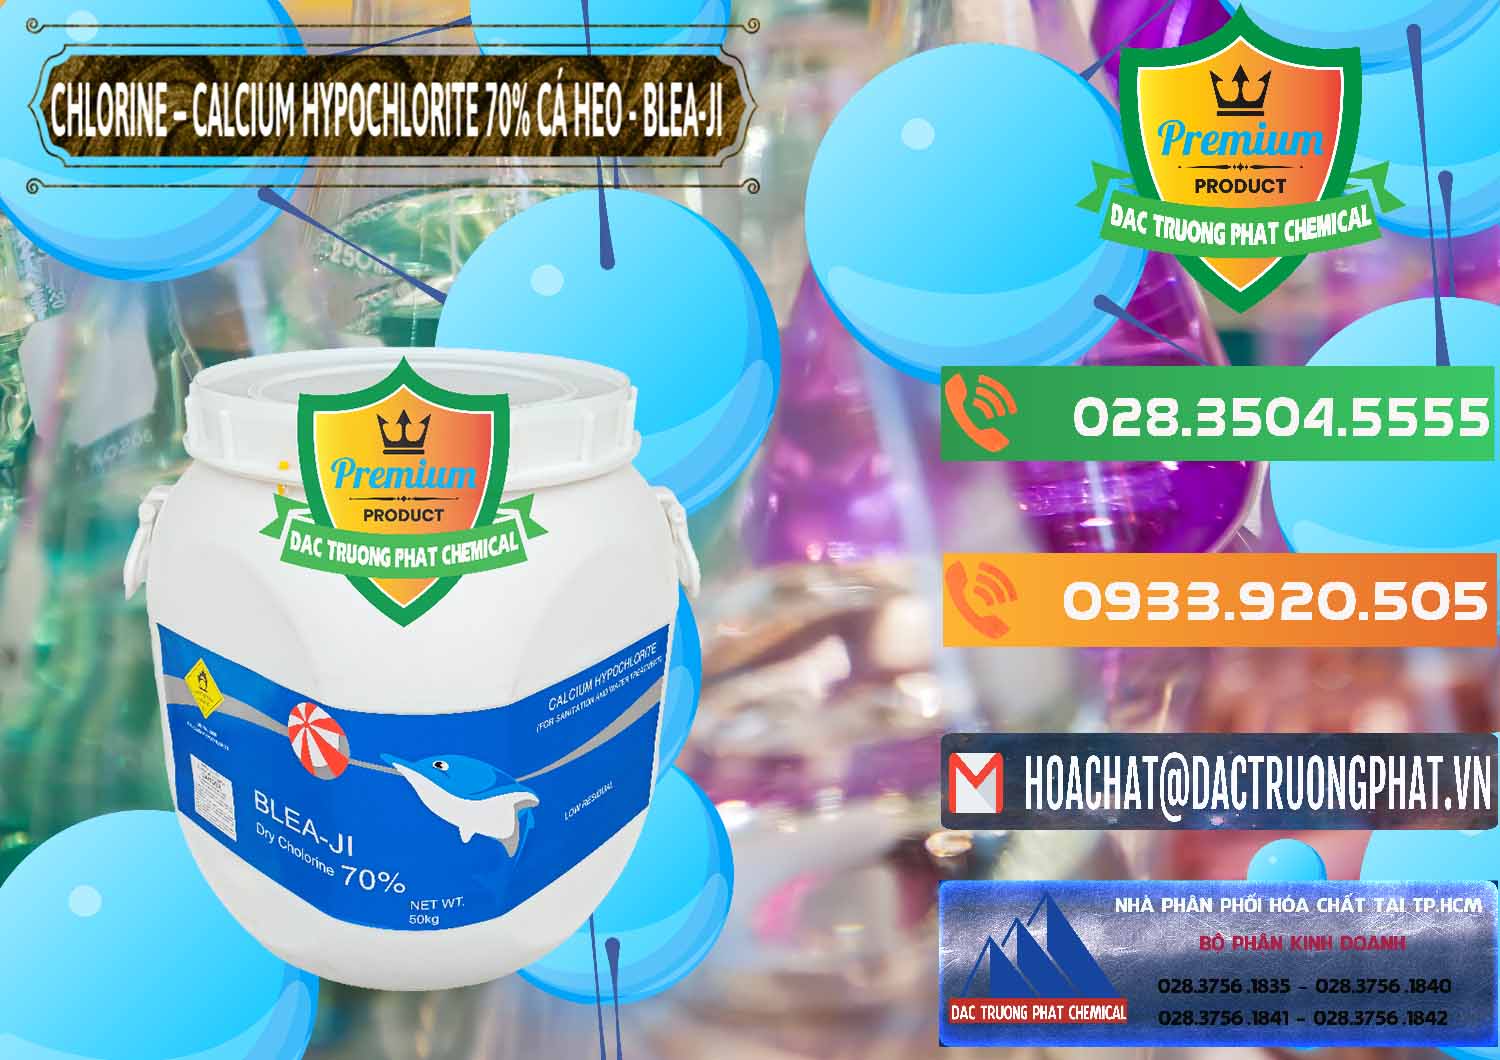 Nơi cung cấp ( bán ) Clorin - Chlorine Cá Heo 70% Blea-Ji Trung Quốc China - 0056 - Công ty cung cấp & phân phối hóa chất tại TP.HCM - hoachatxulynuoc.com.vn